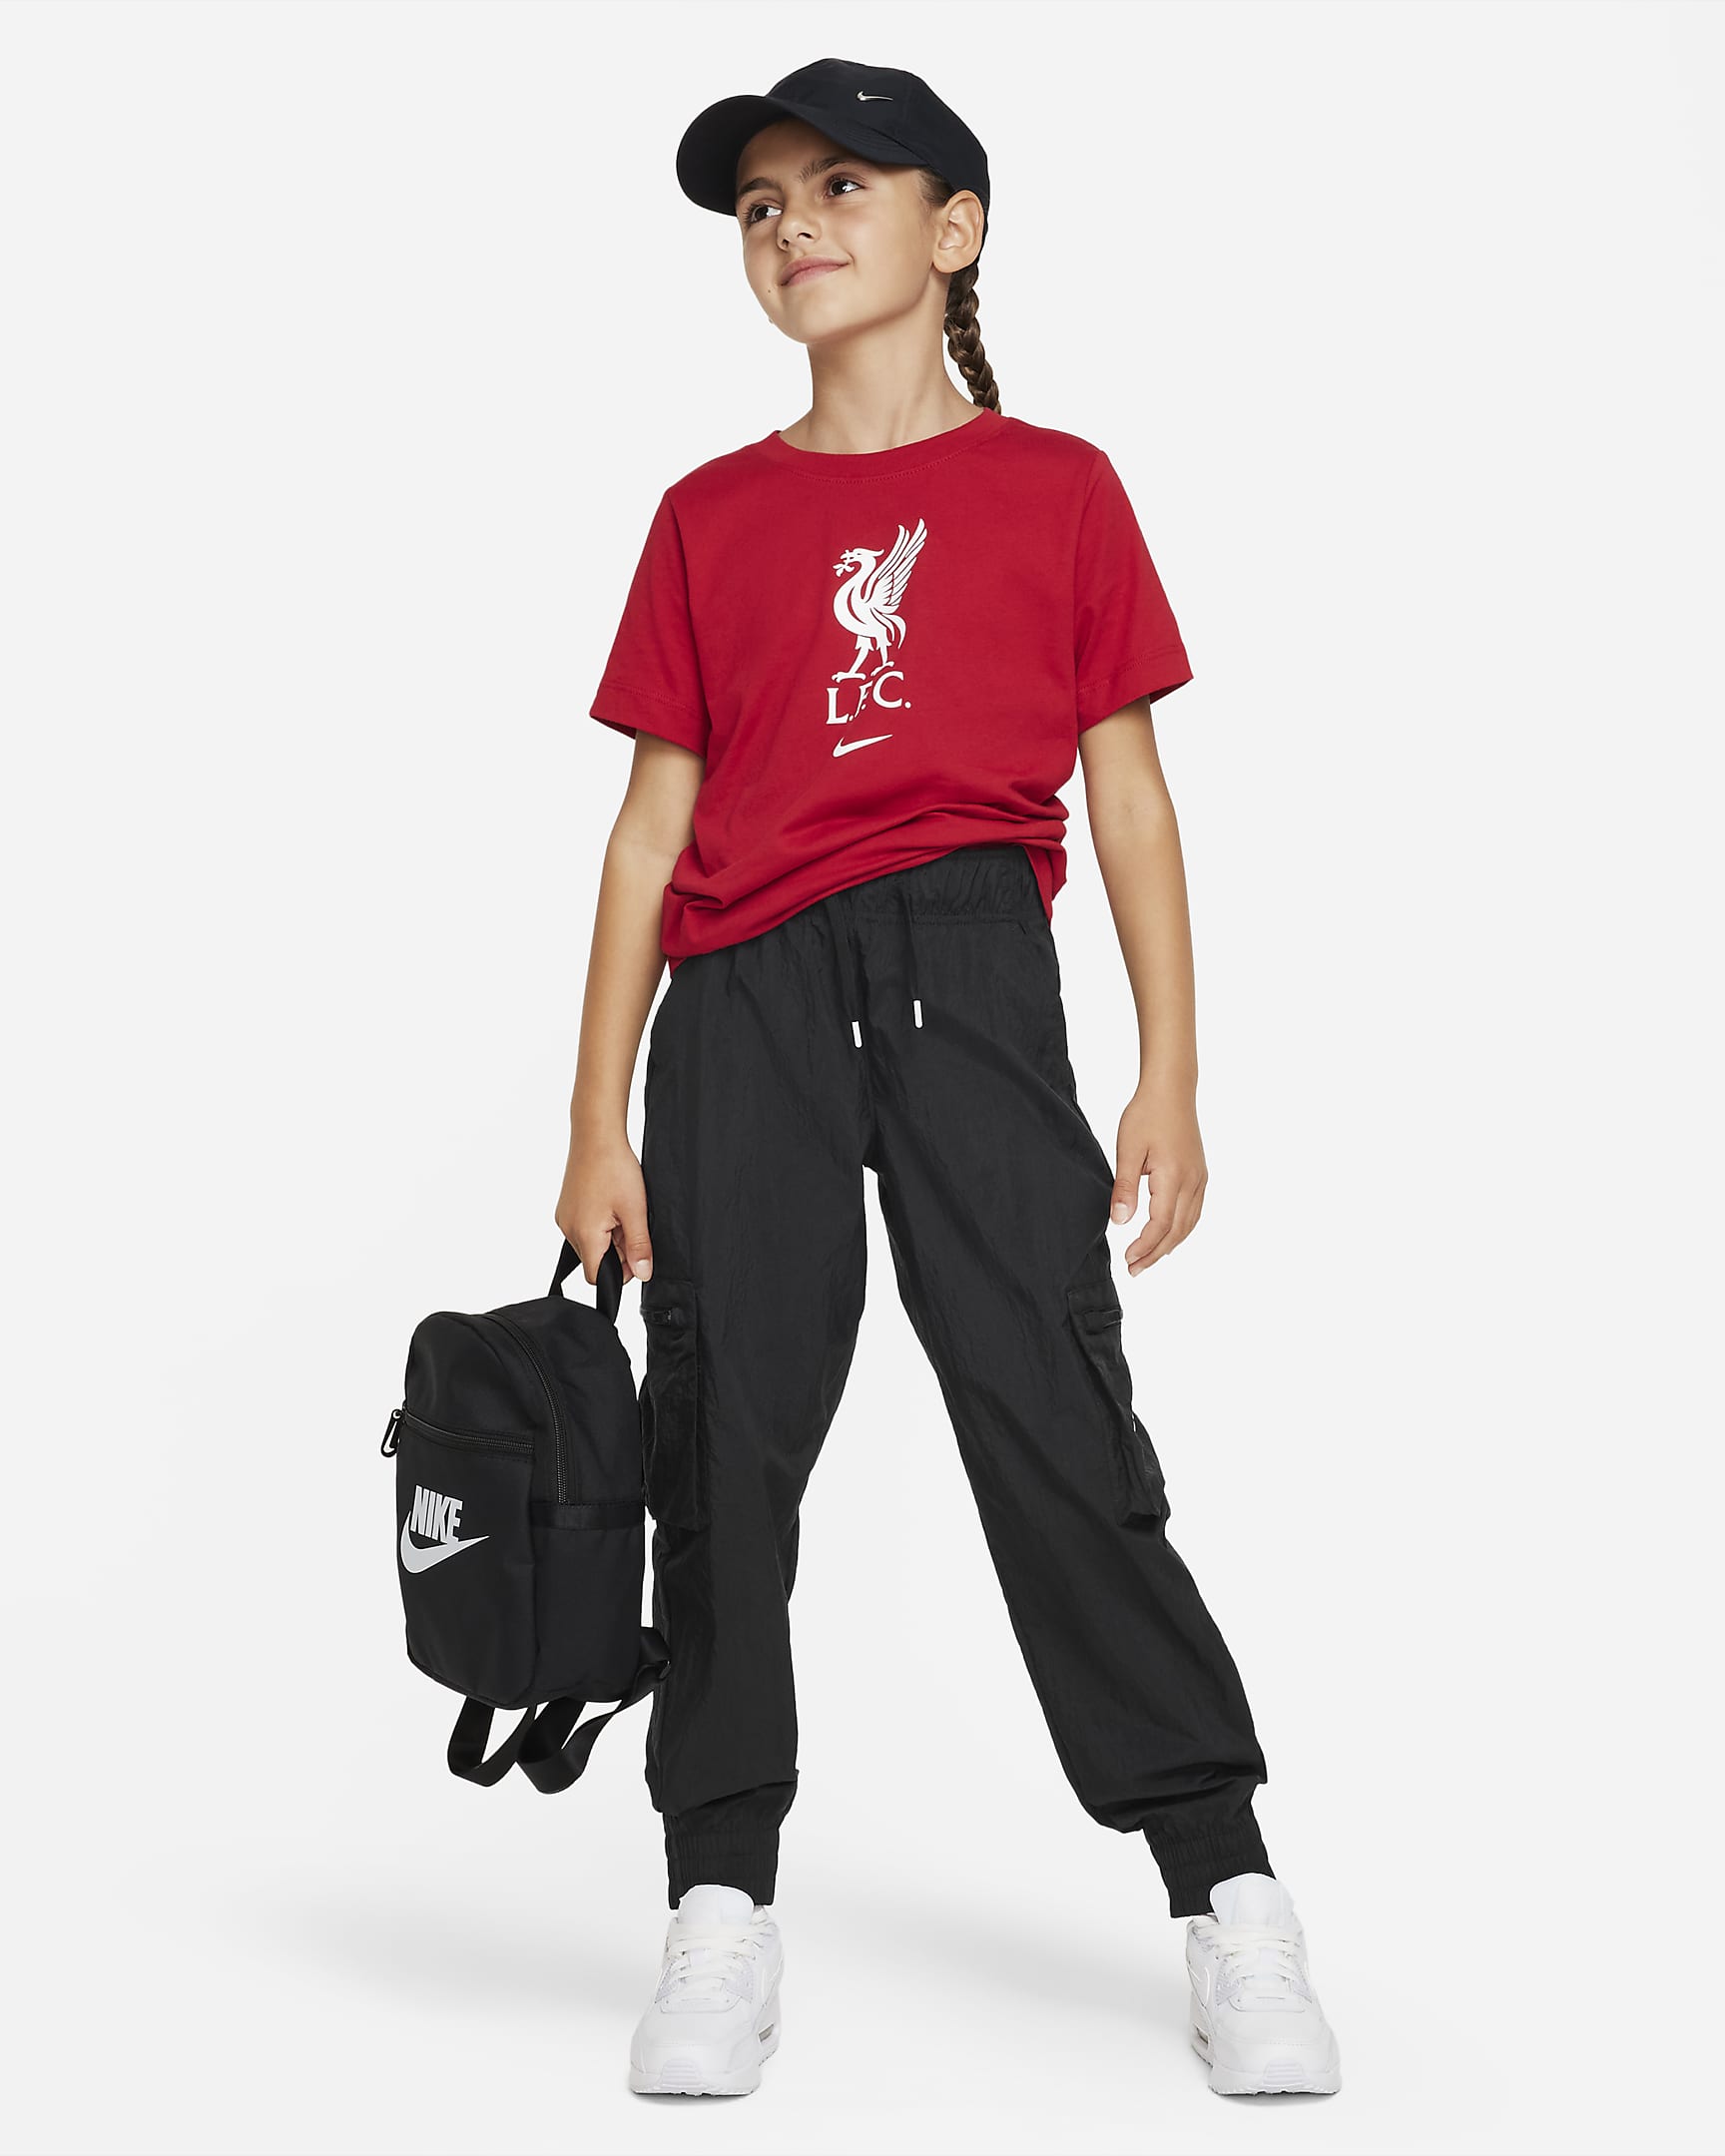 Liverpool F.C. Crest Older Kids' Nike T-Shirt. Nike SK